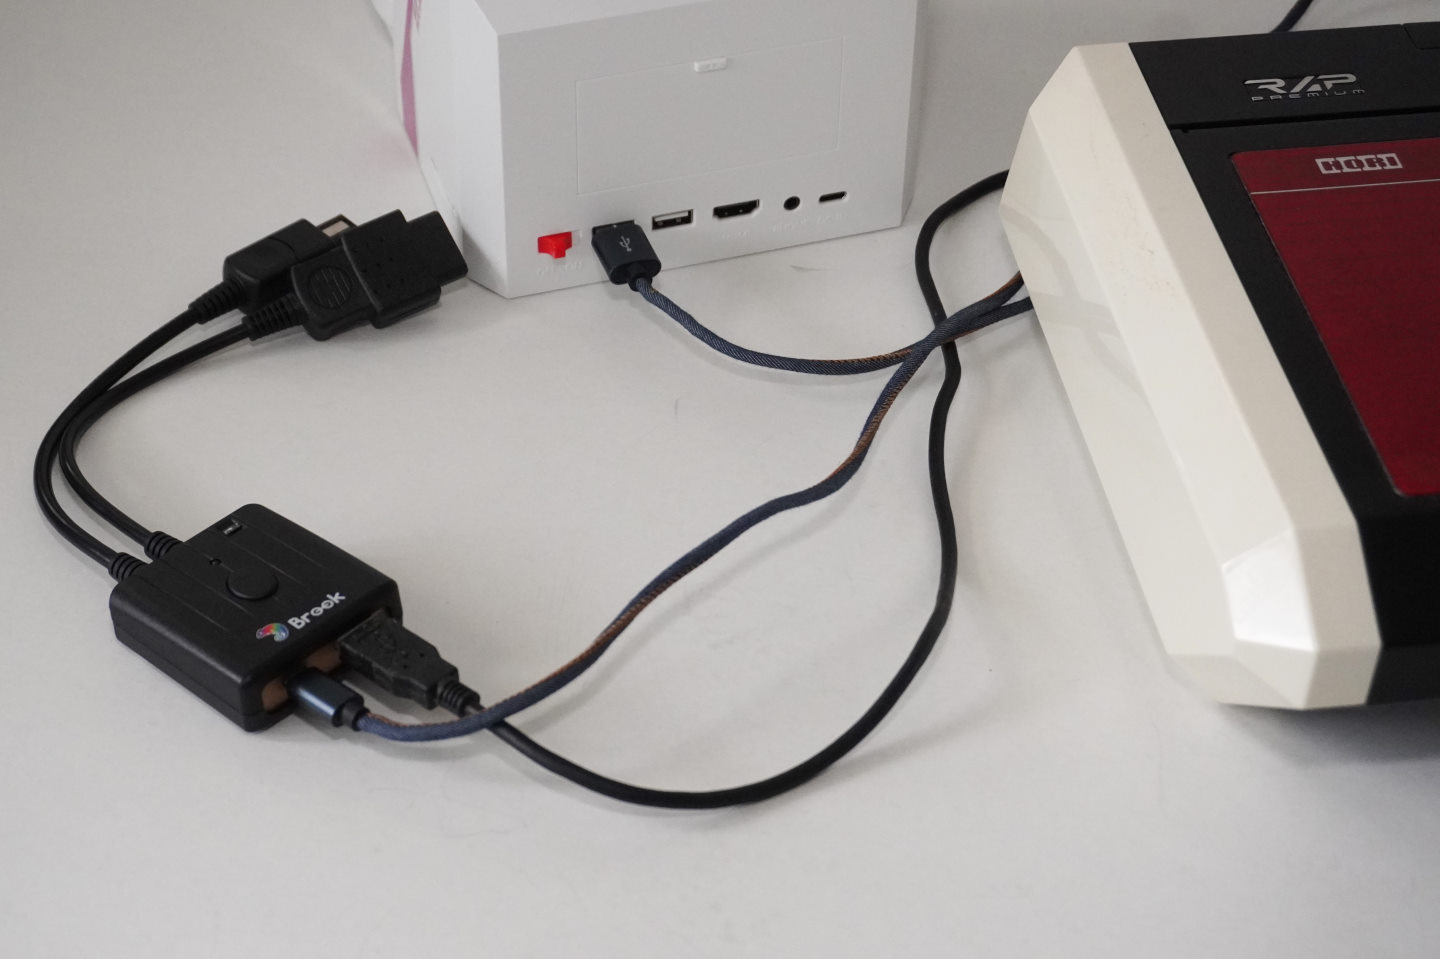 安裝方式為將Real Arcade Pro: 3 Premium VLX連接到右側USB端，並由左側的Micro USB端連接到Egret II Mini。